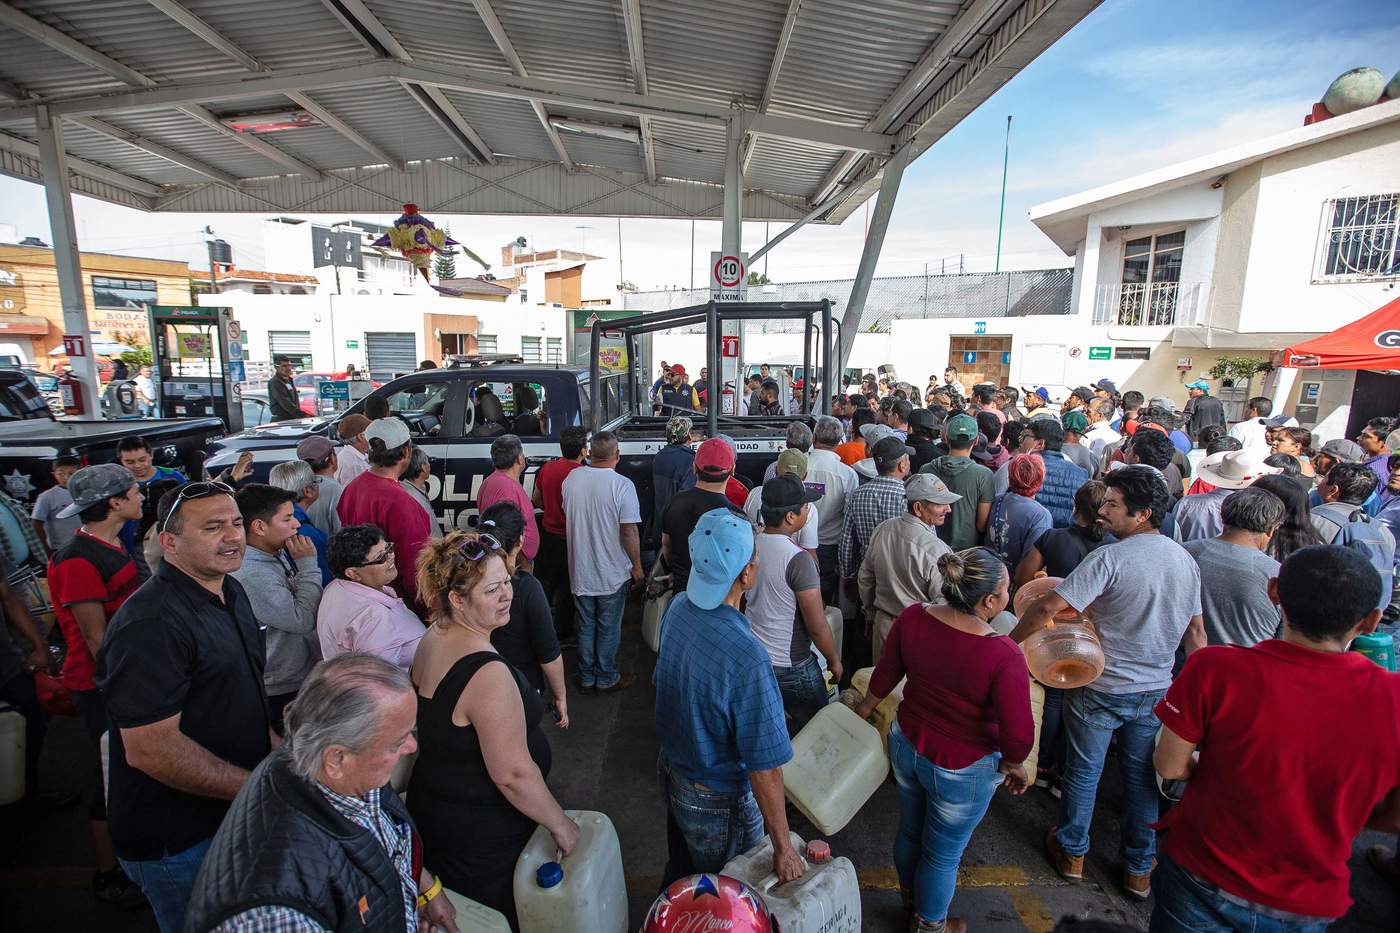 El Gobierno de México debería considerar 'medidas adicionales' para hacer frente a la escasez de gasolina en varios estados del país, dijo hoy la asociación de gasolineros Onexpo Nacional, que a su vez apoyó al Ejecutivo por combatir el robo de hidrocarburos. (EL UNIVERSAL)